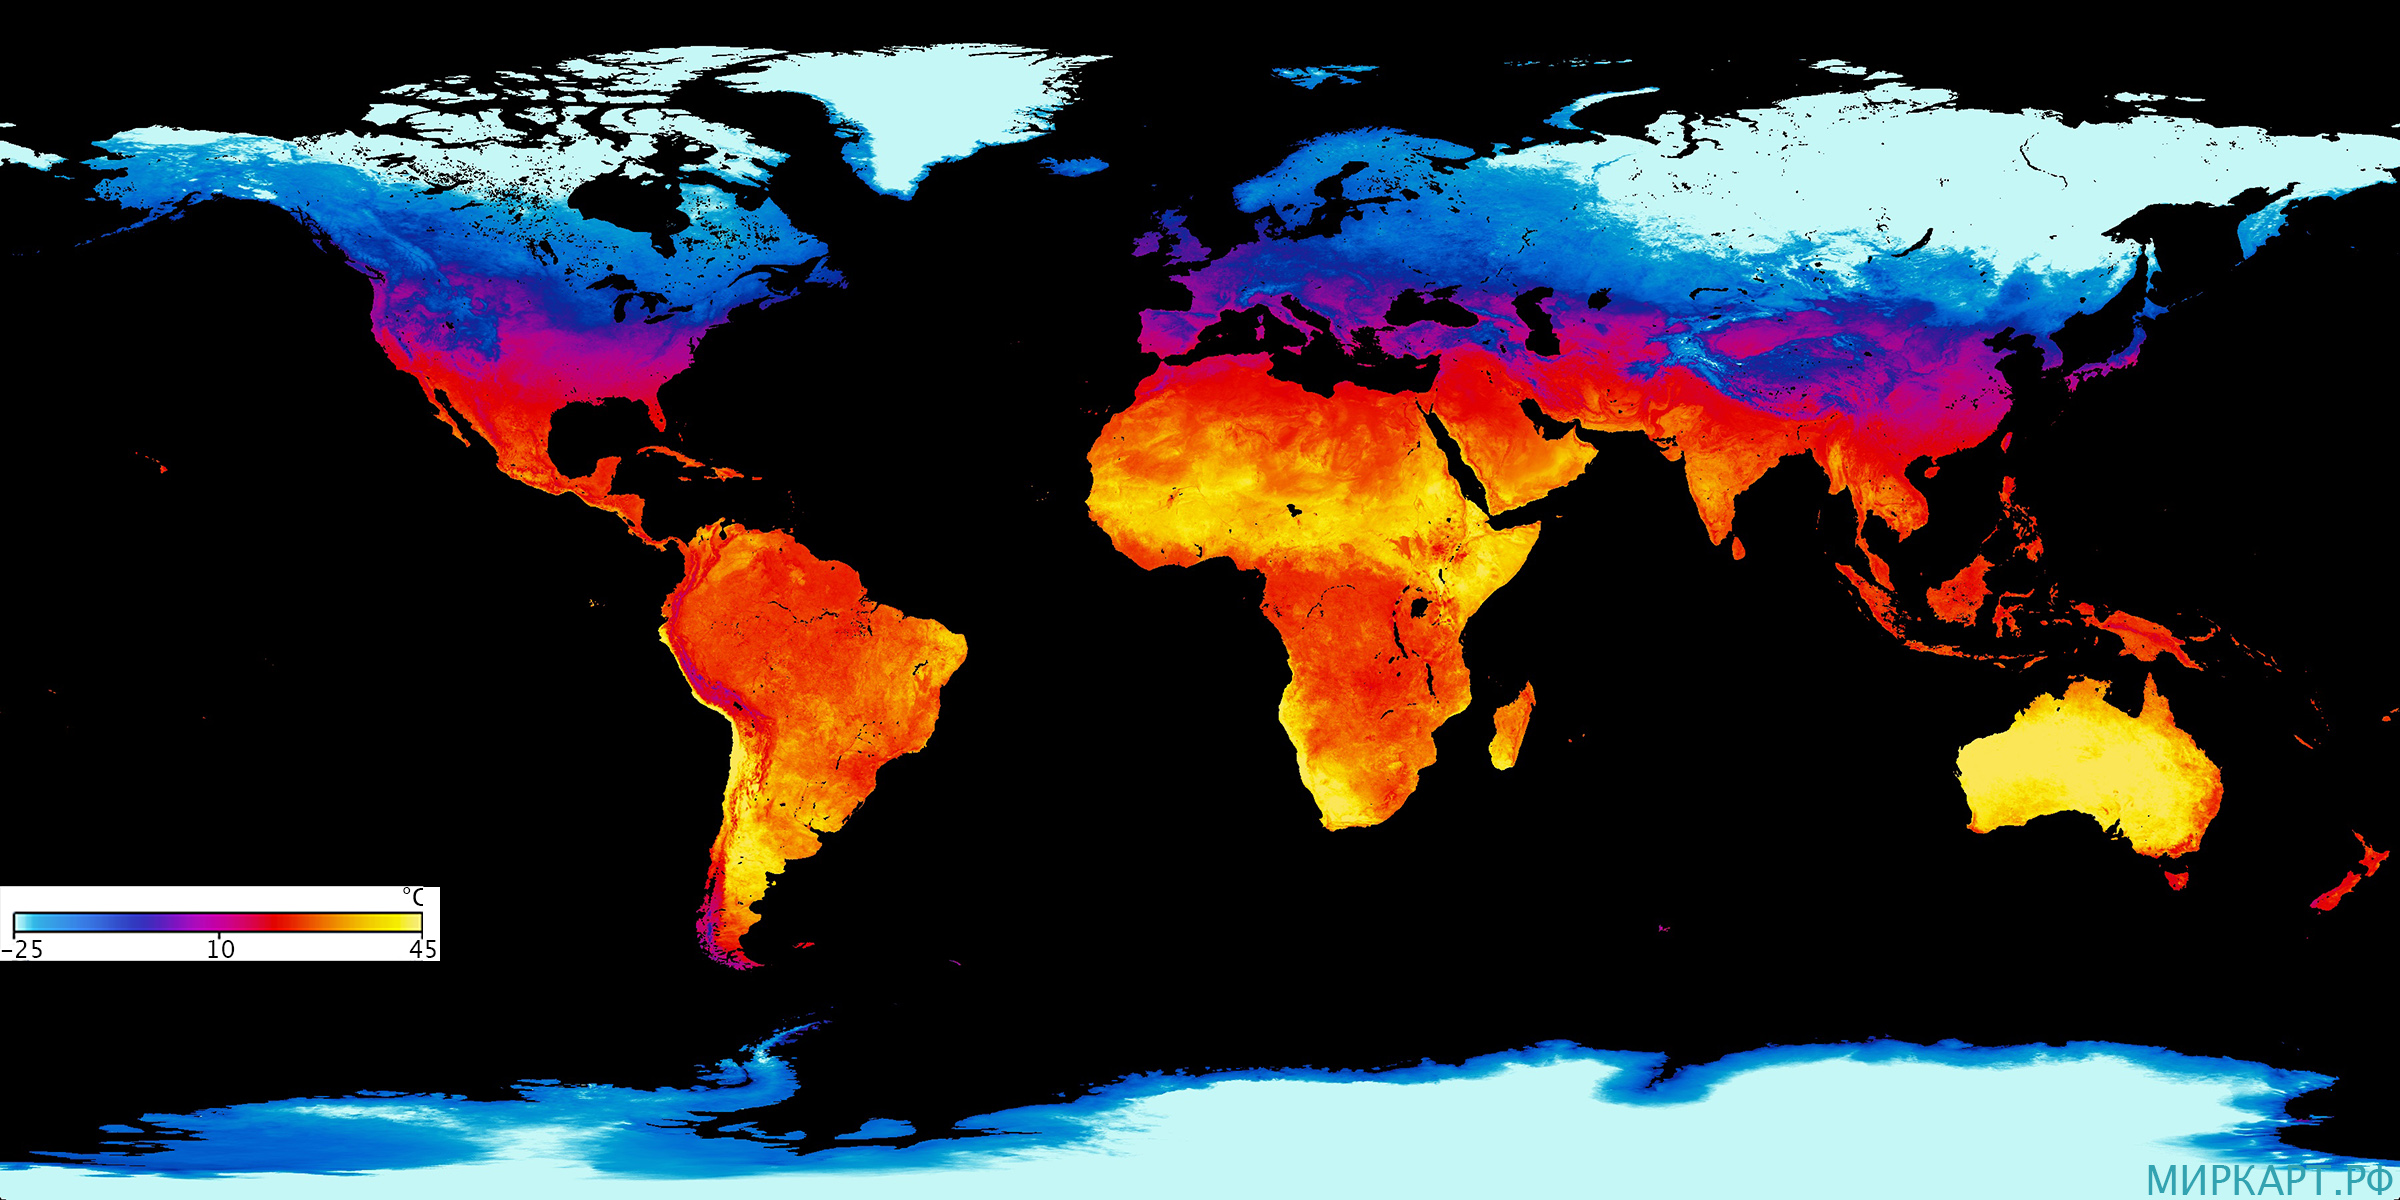 Дневная температура поверхности земли в январе 2021 года